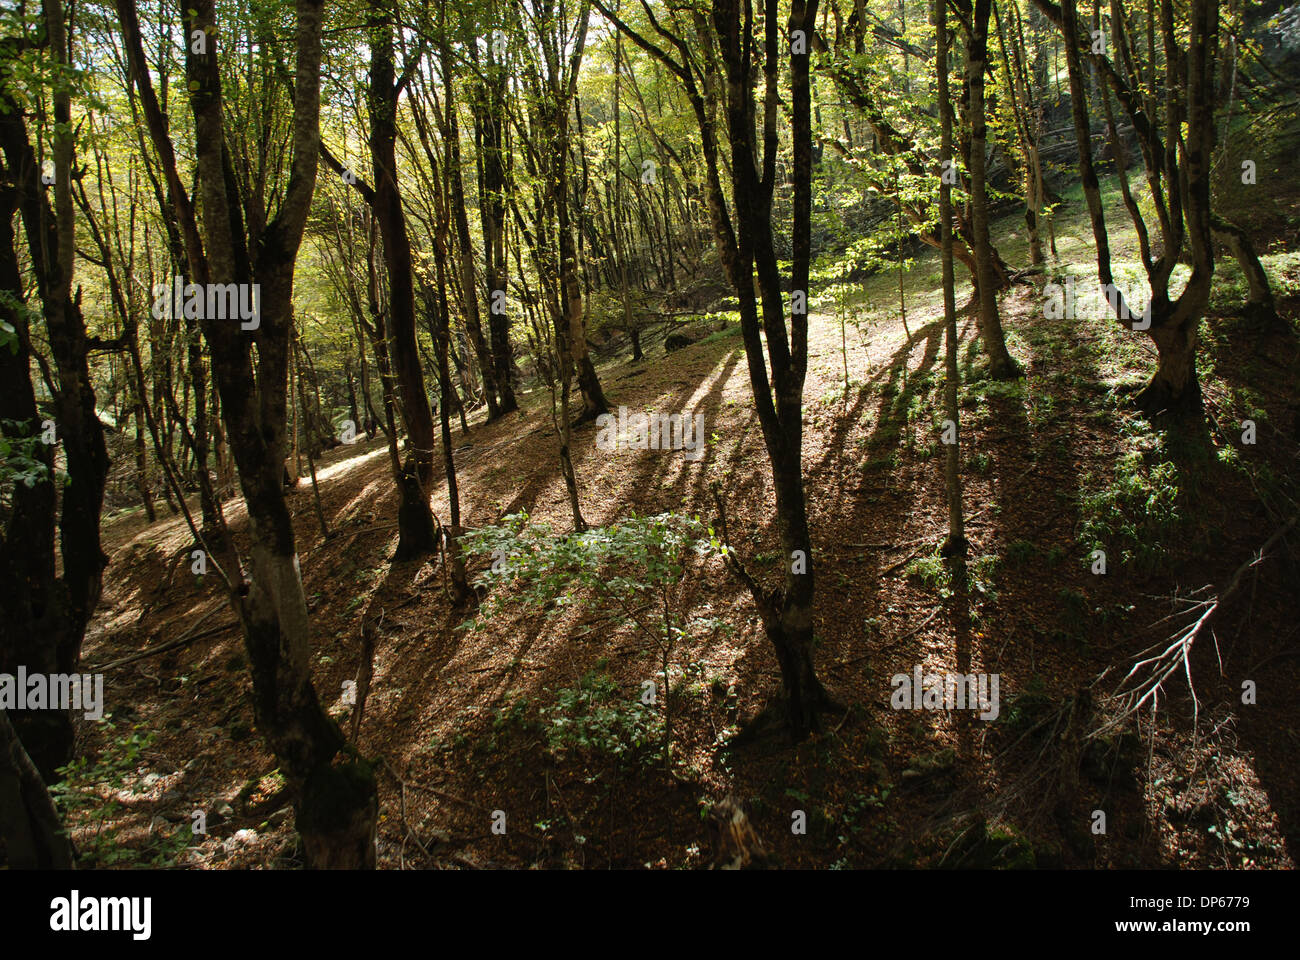 Forest at Nagorno-Karabakh Stock Photo